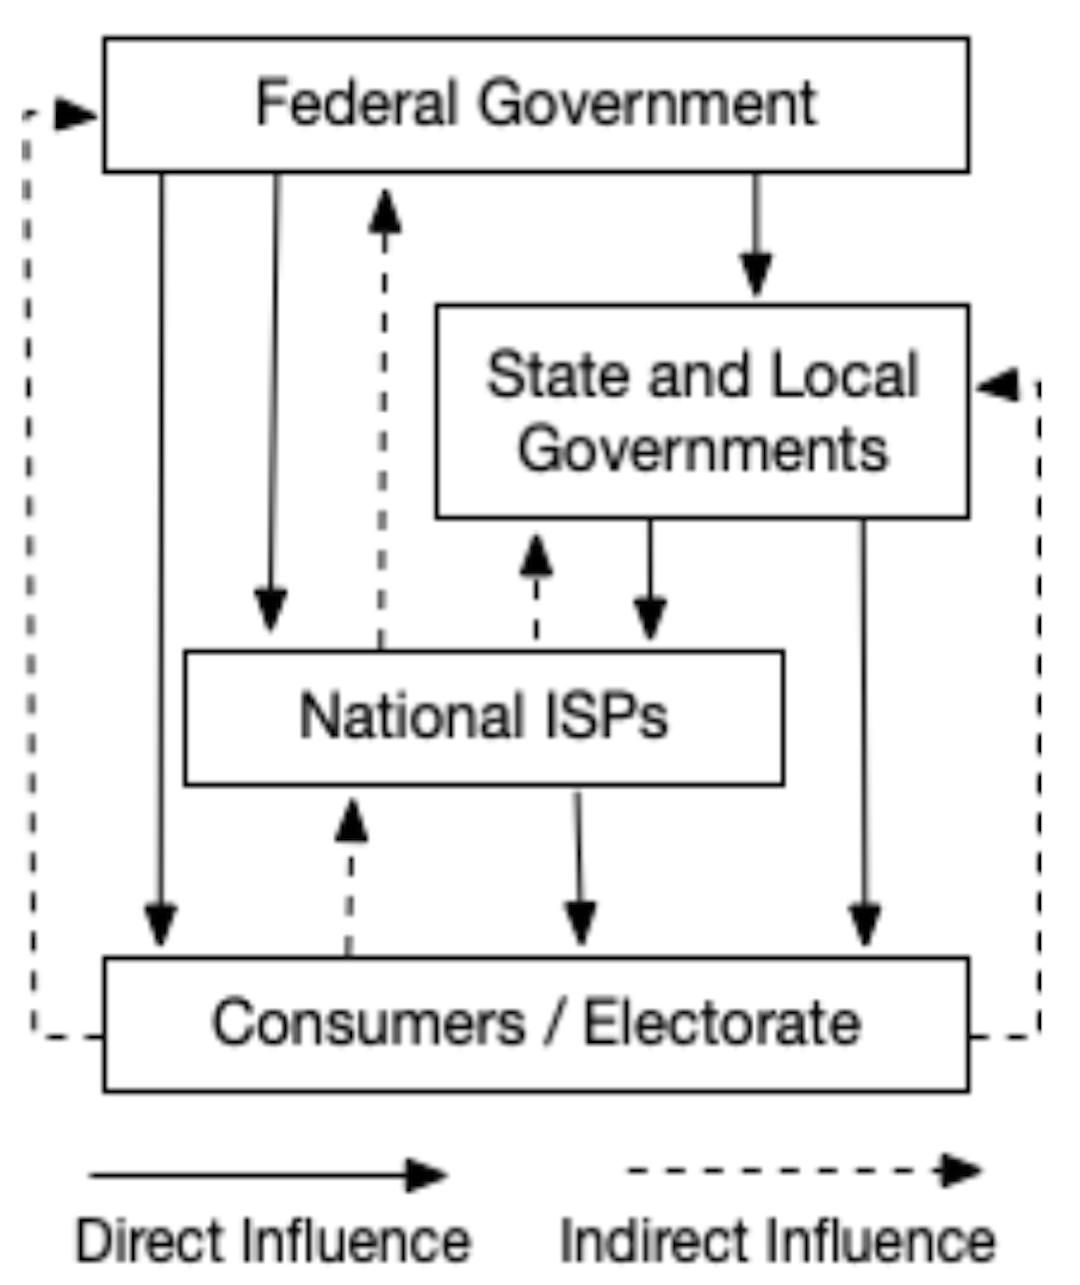 Abbildung 1. Beziehungen zwischen Regierung, ISP und Verbraucher